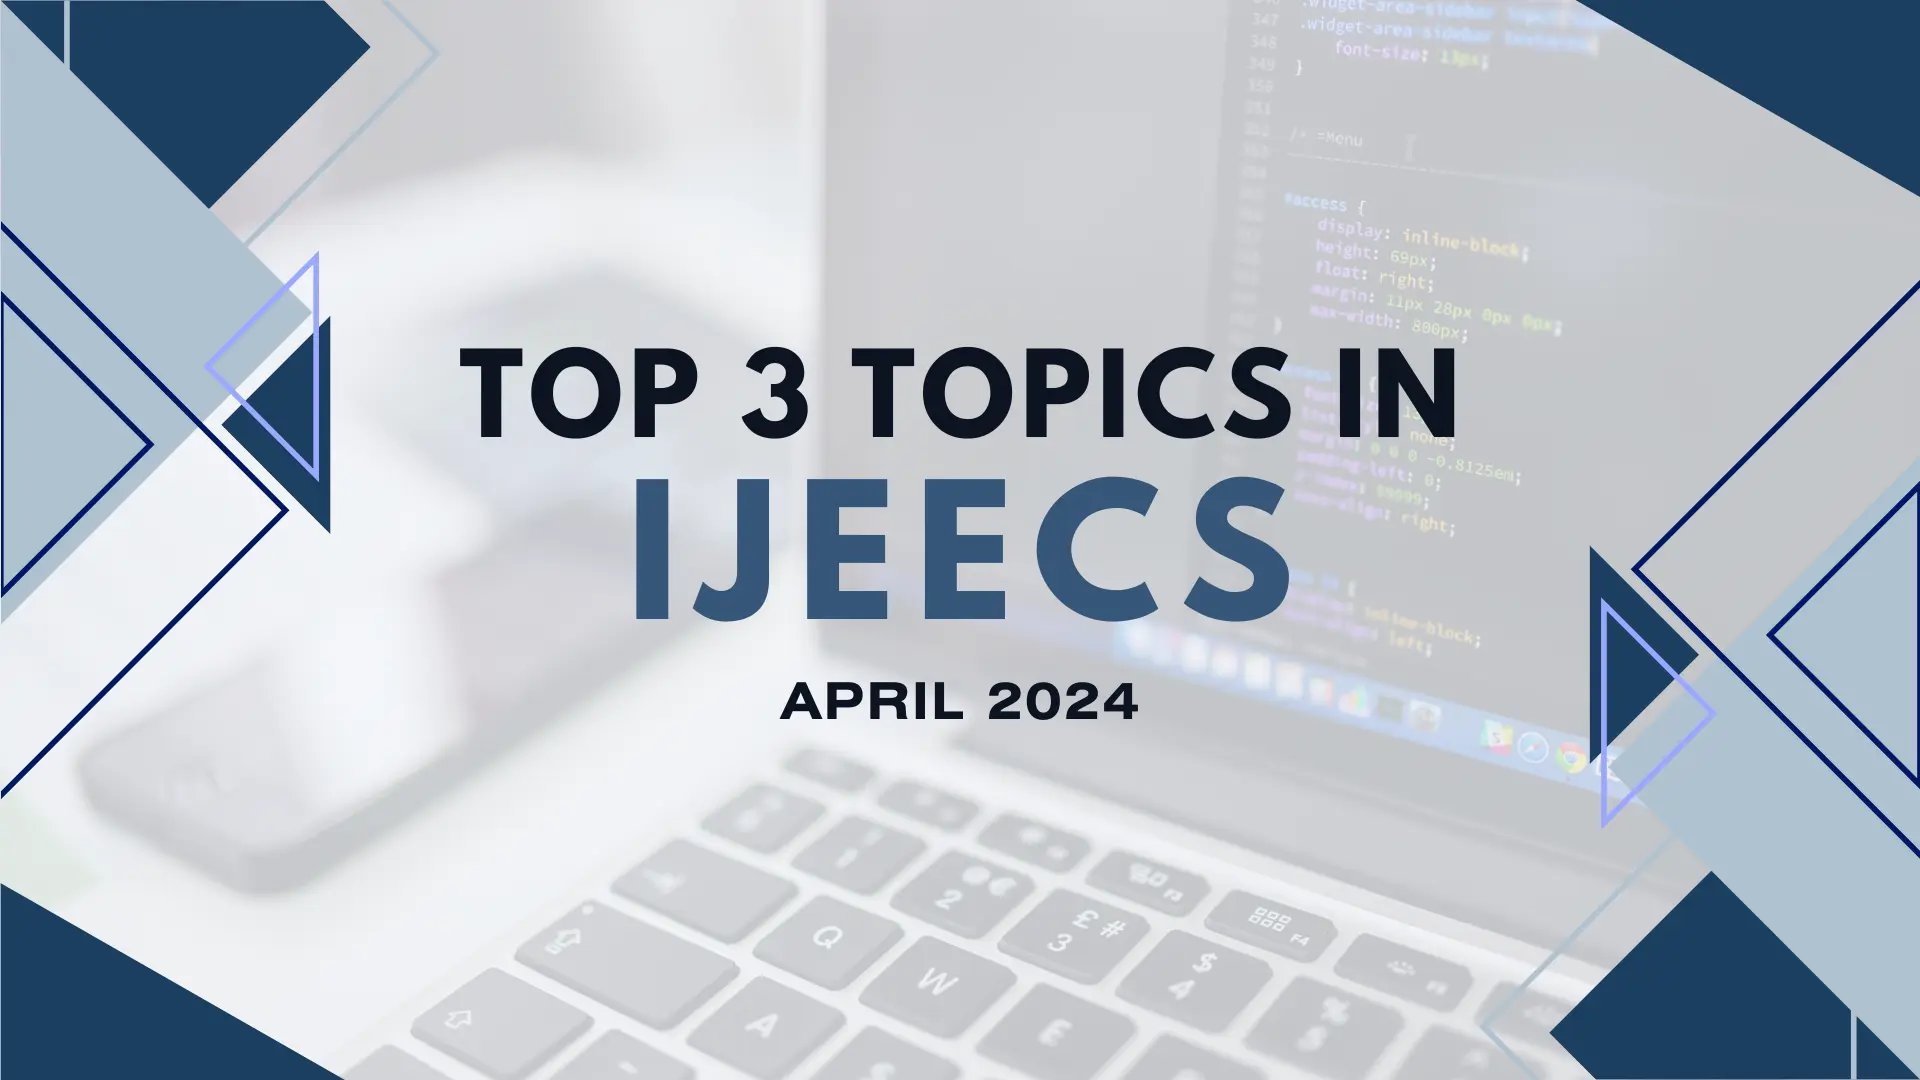 Top 3 topics in IJEECS April 2024